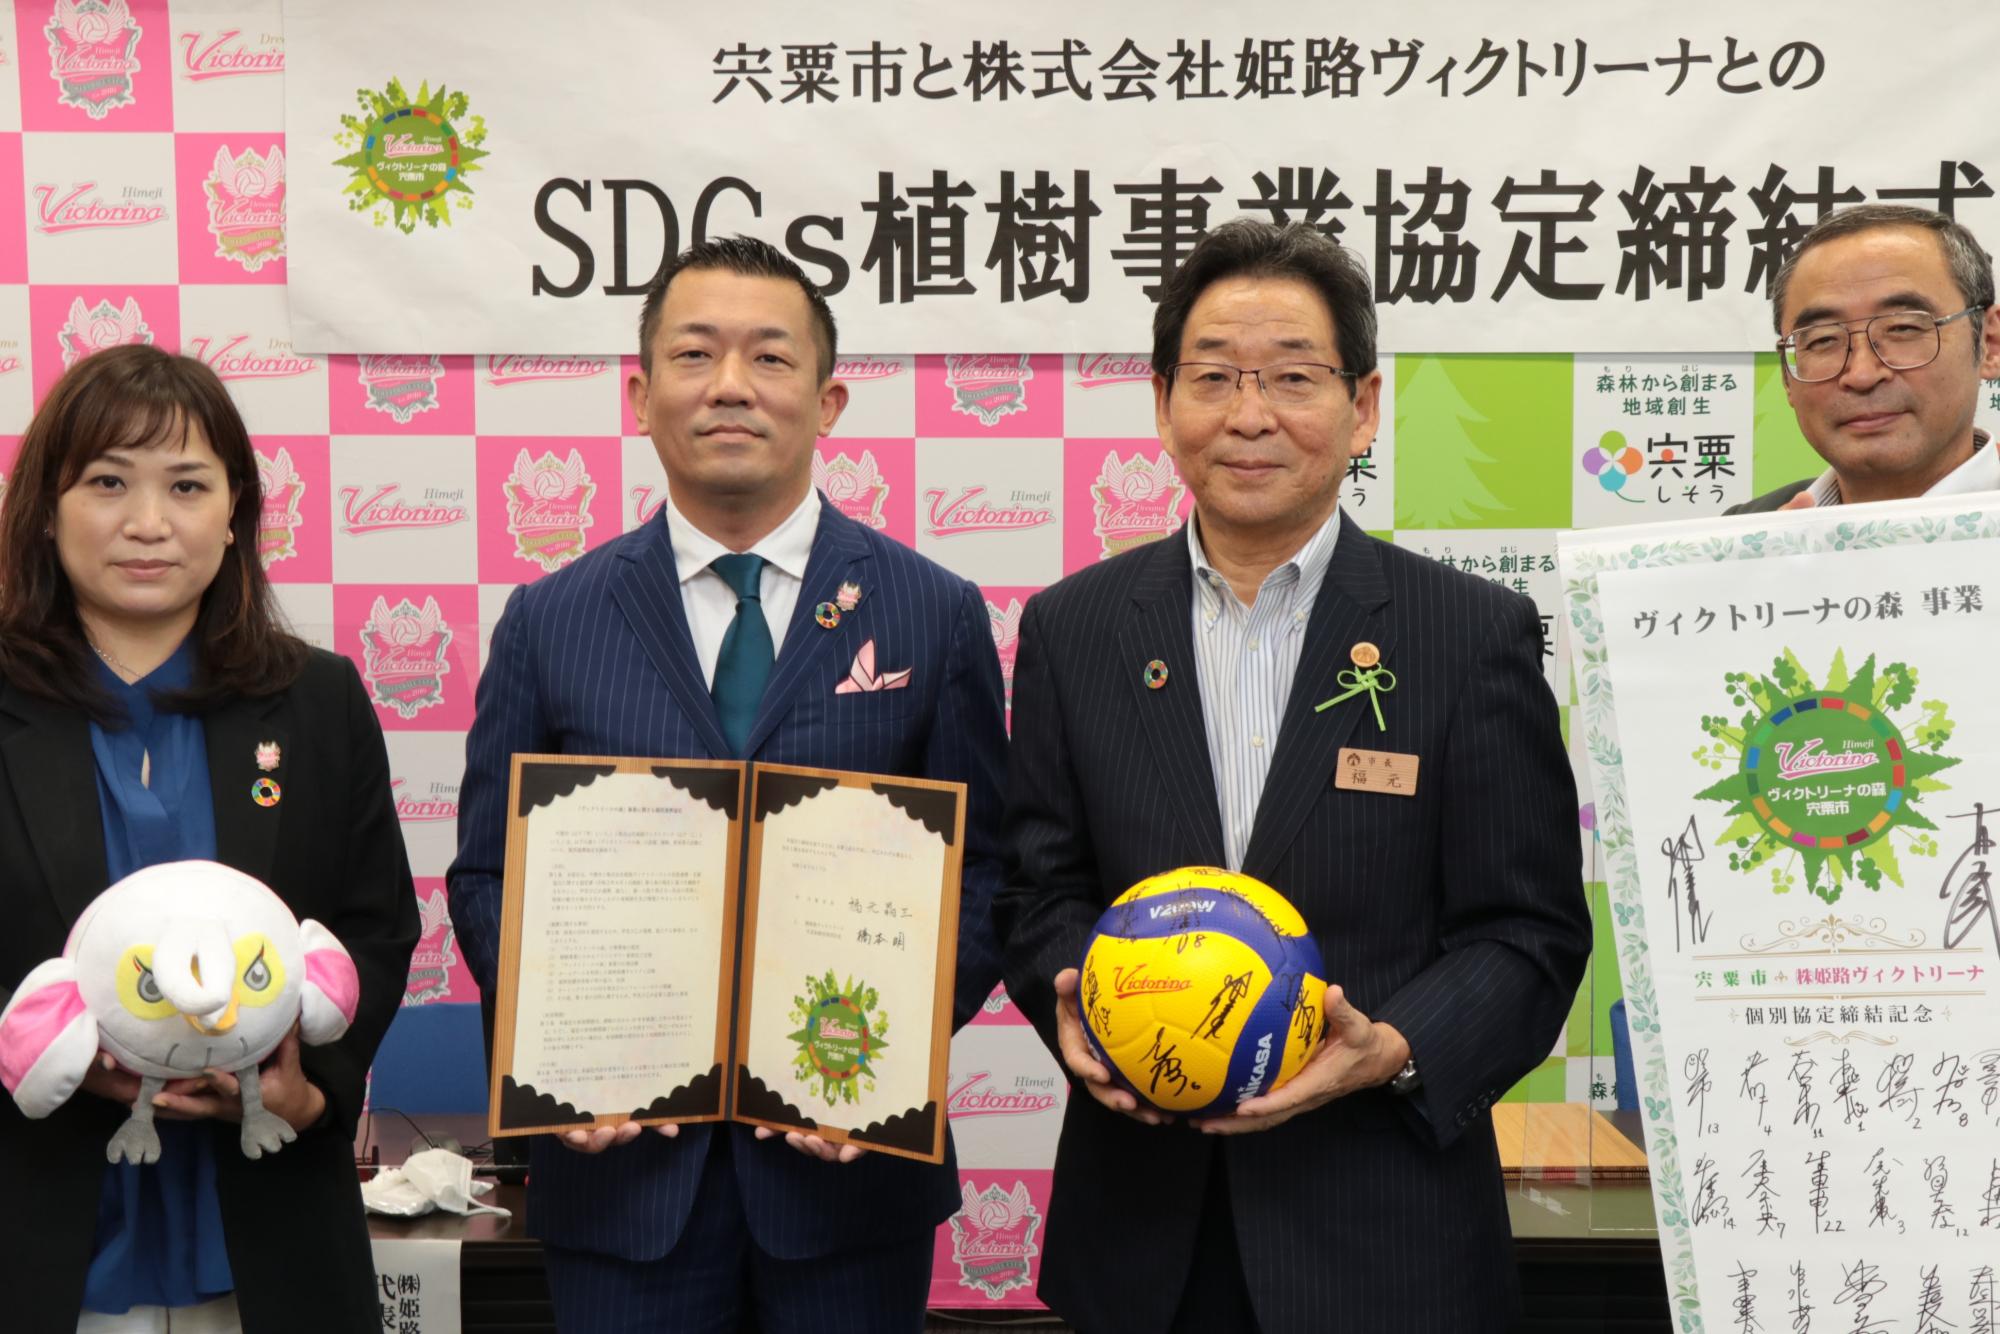 姫路ヴィクトリーナの竹下さんと橋本社長、福元市長と富田副市長が横一列に並び、協定書を手に微笑んでいる写真